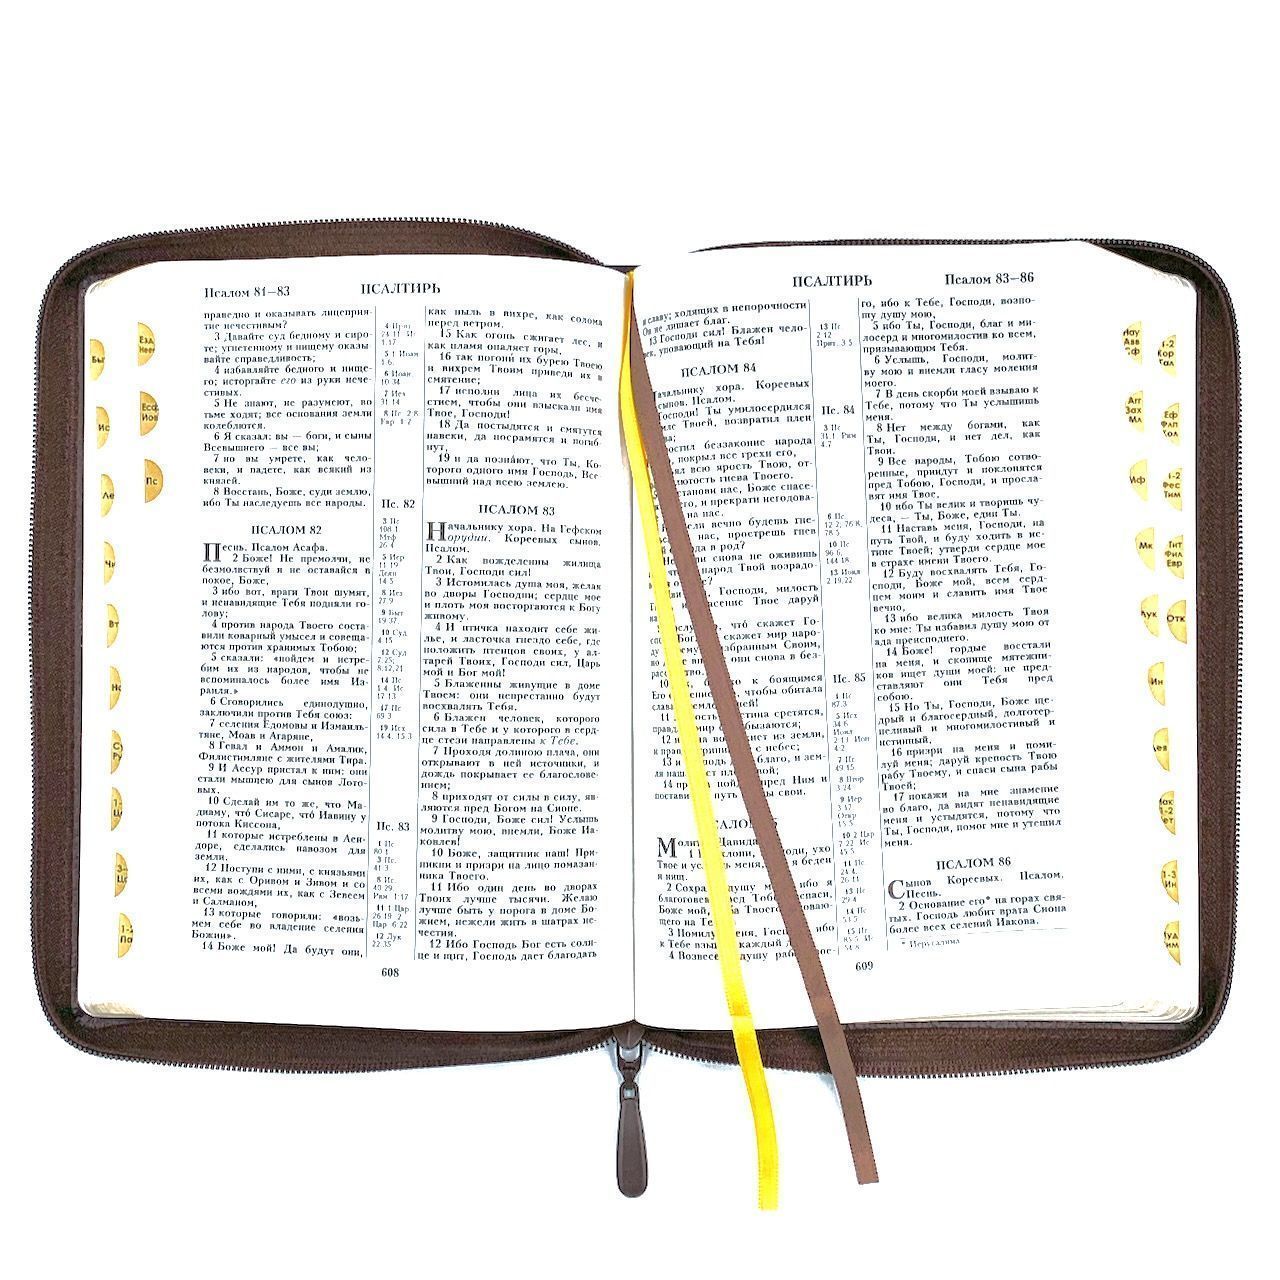 Библия 076zti код 23076-6, дизайн "слово Библия", кожаный переплет на молнии с индексами, цвет коричневый пятнистый, размер 180x243 мм